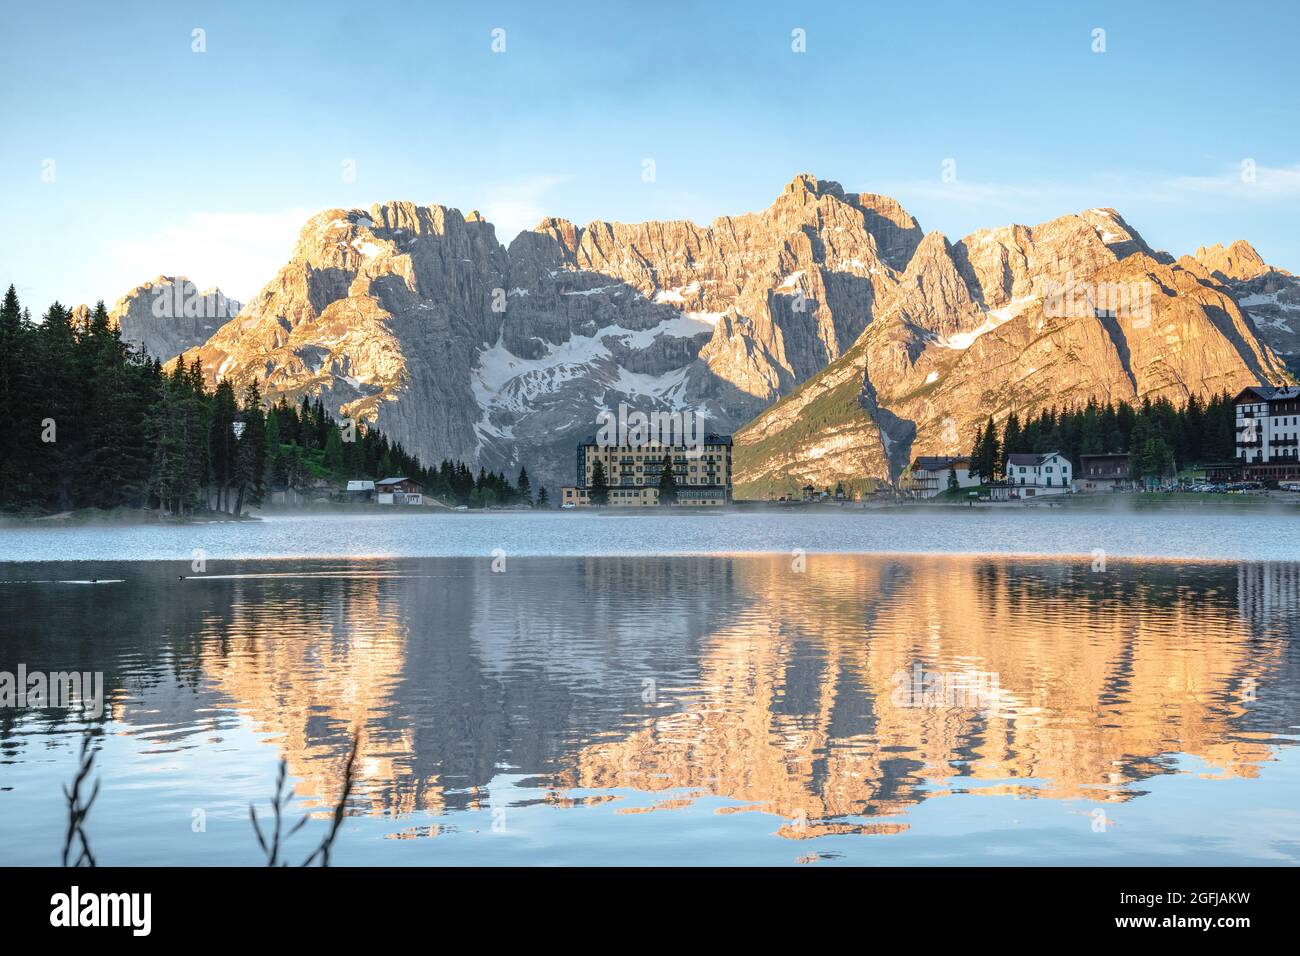 La tranquillità di un lago alpino subito dopo l'alba, le montagne dorate e la foschia sull'acqua. Lago di Misurina, Belluno, Veneto. Italia. Foto Stock